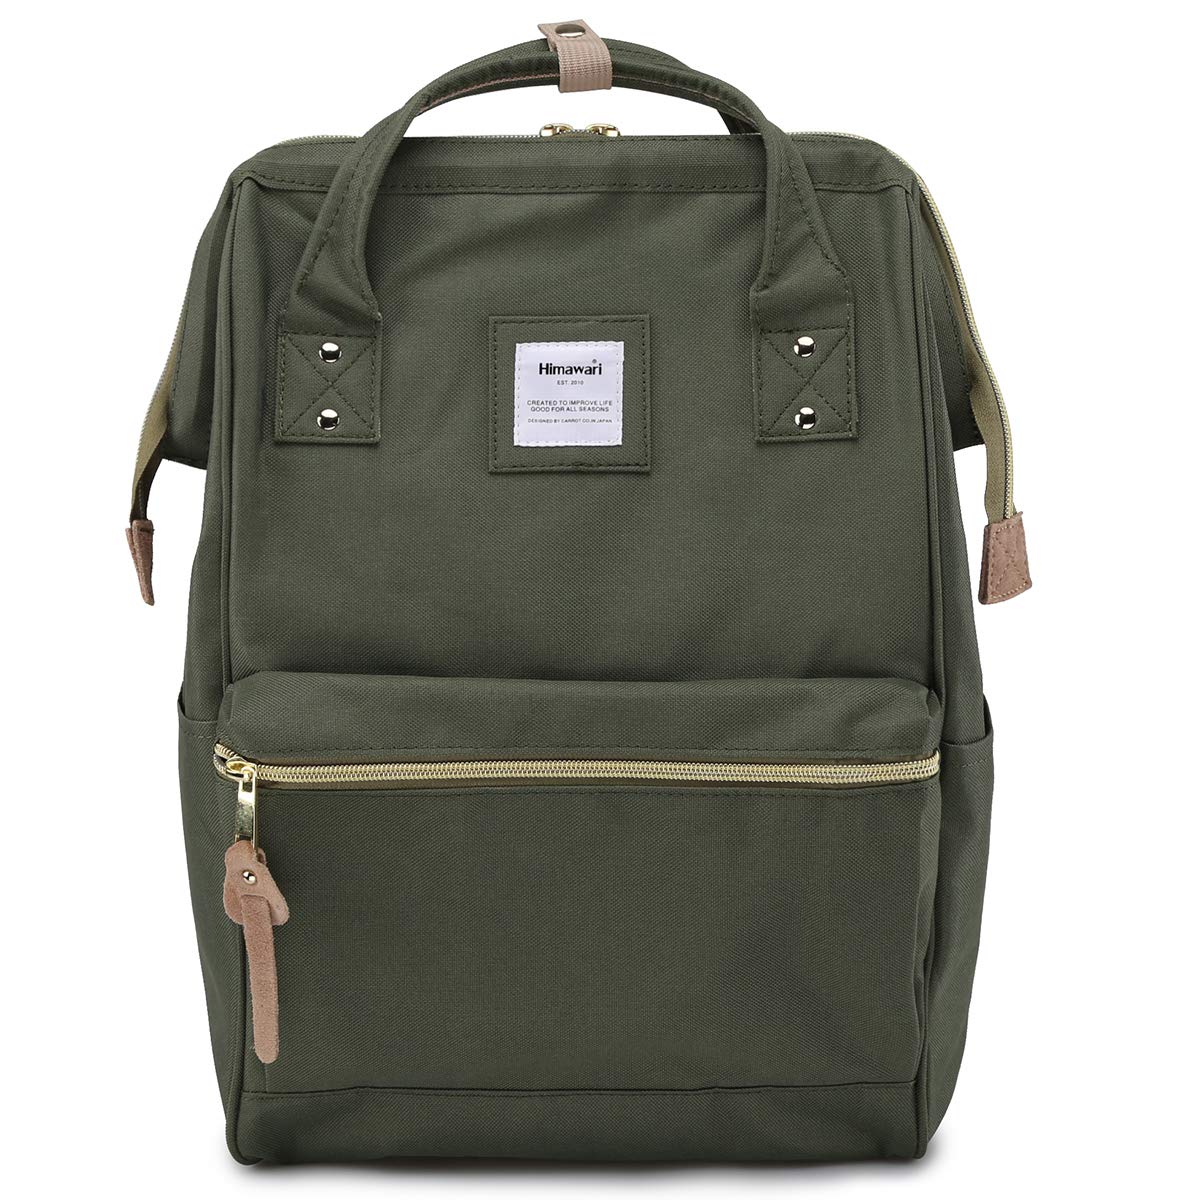 Himawari Travel Backpack Laptop Backpack Large Diaper Bag $28.99 (REG $55.99)